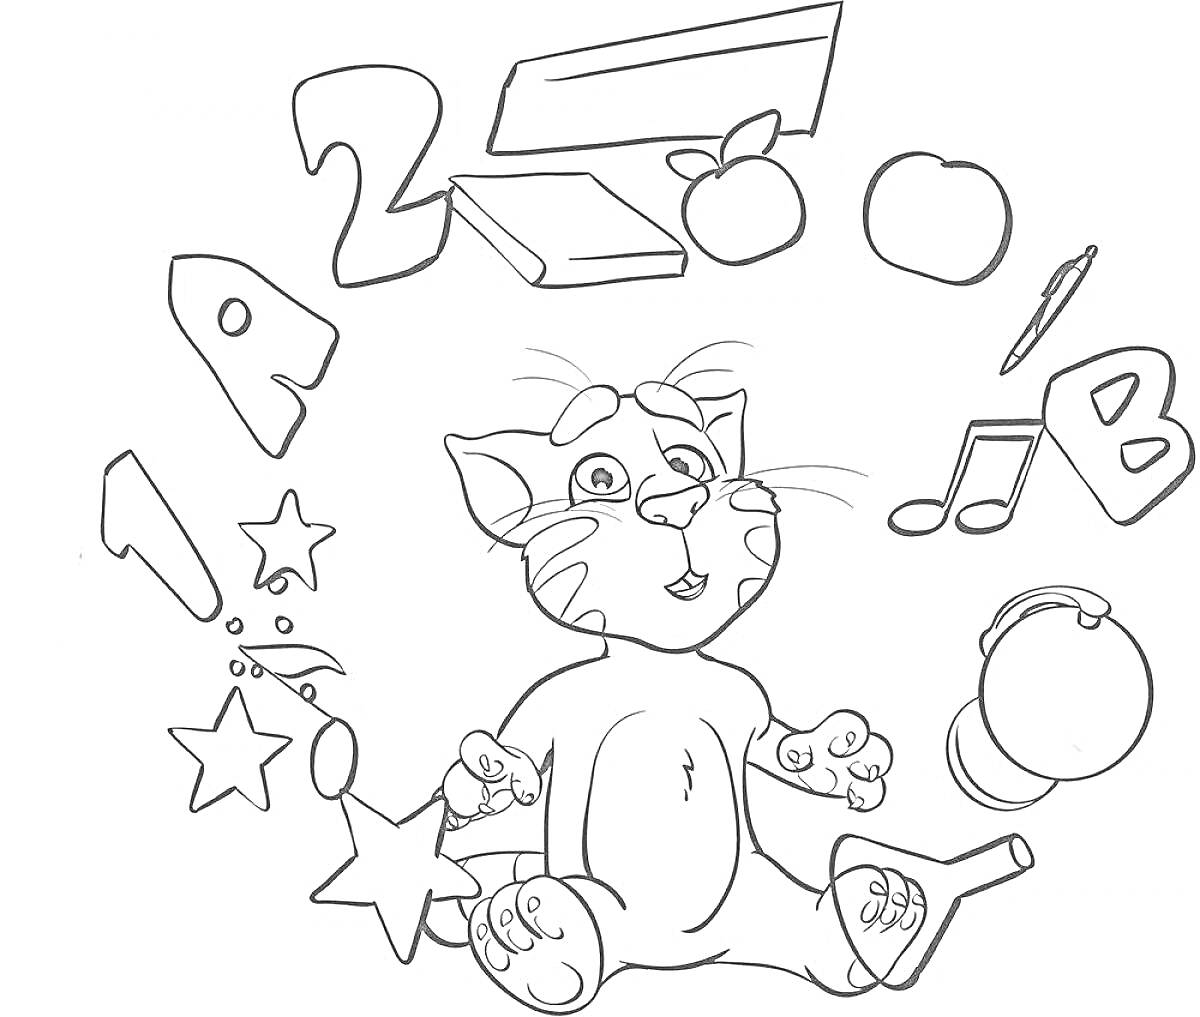 Раскраска Кошка с буквами, цифрами, звездами, яблоками, ручкой, музыкальными нотами и шариком